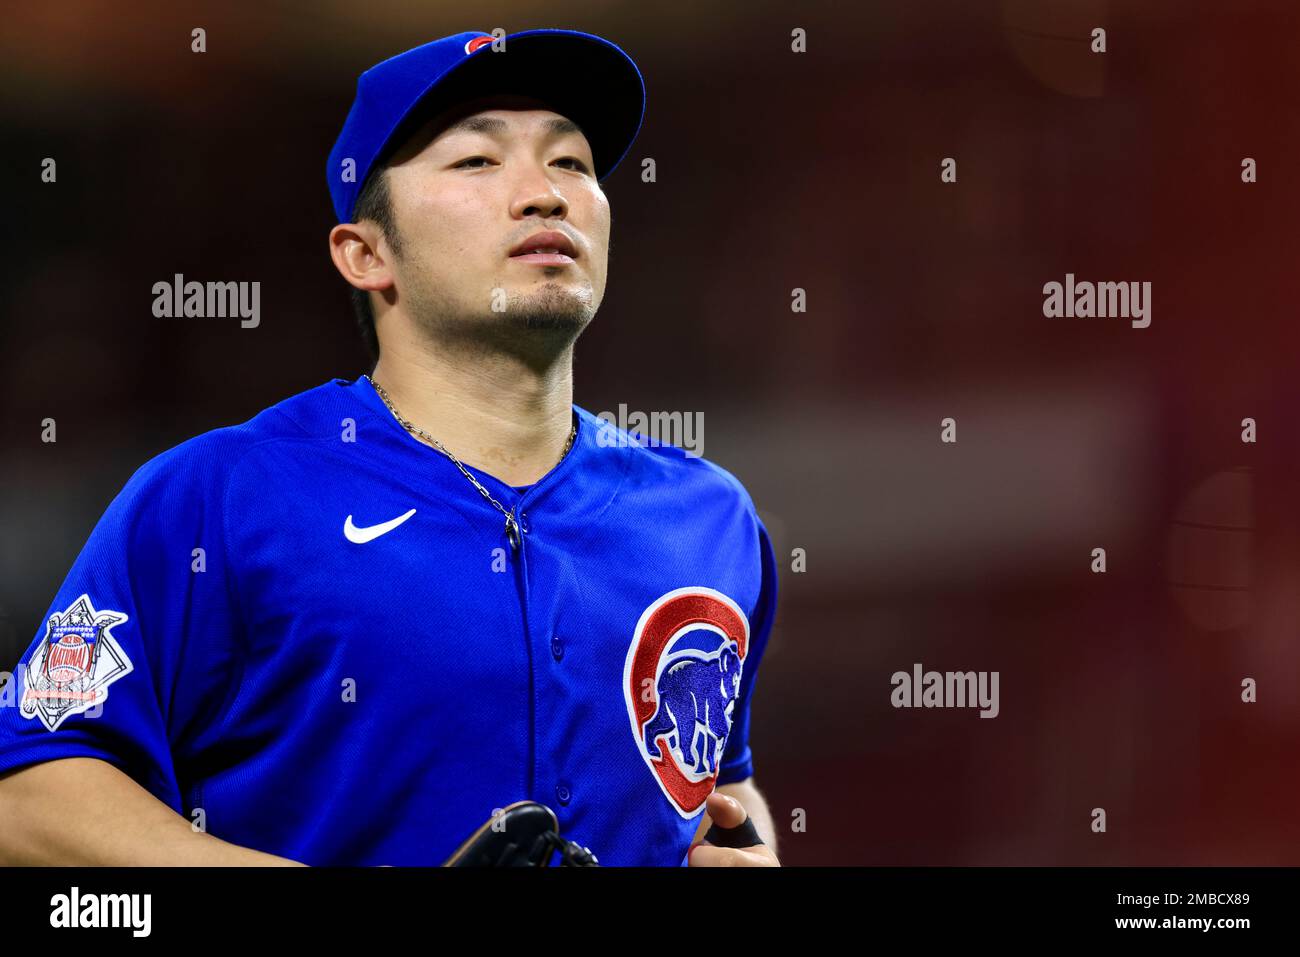 Chicago Cubs Seiya Suzuki Seiya later shirt